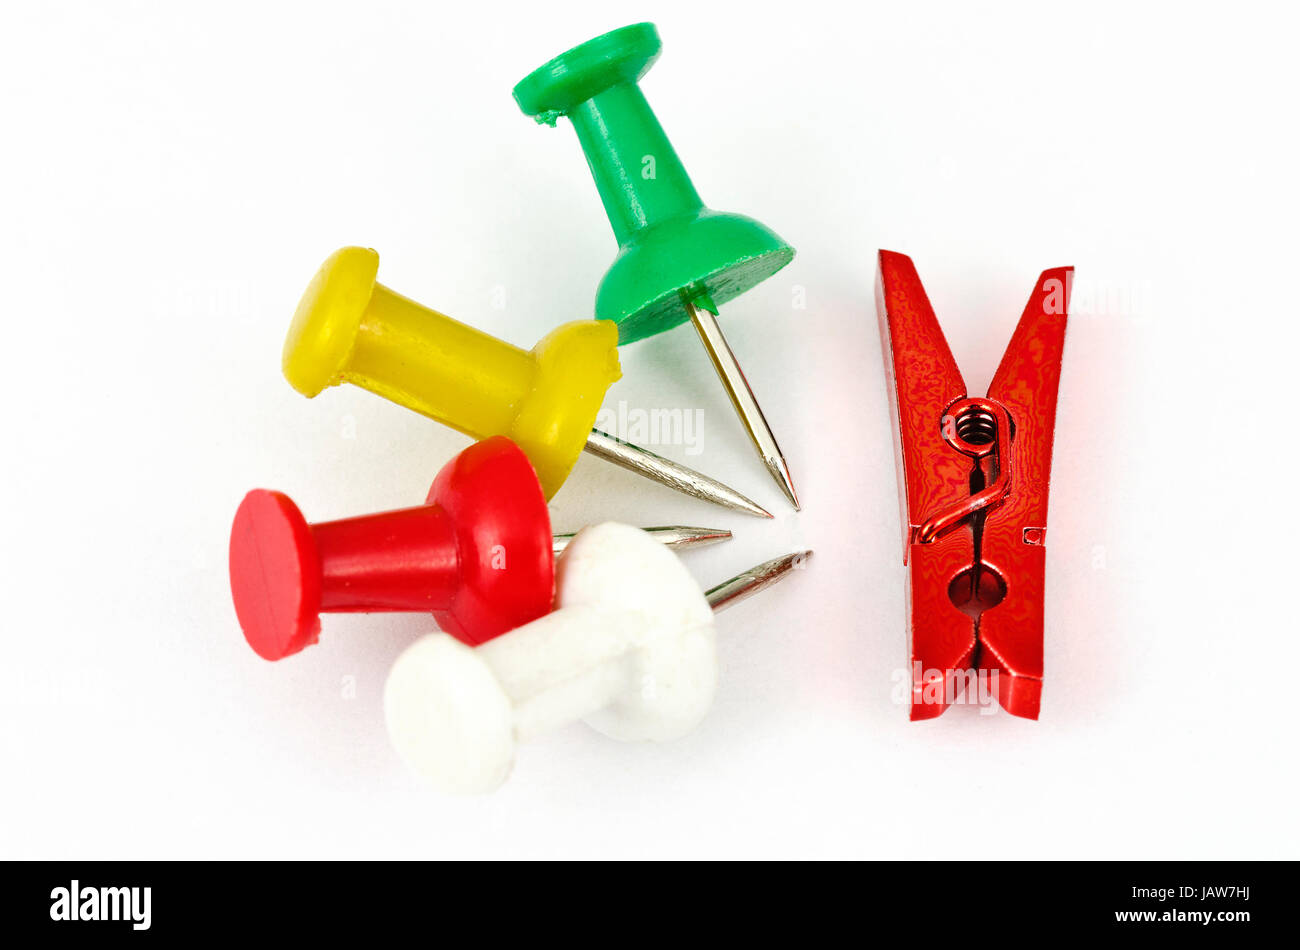 Vier Pins und eine rote Miniaturwäscheklammer aus dem Bürobedarf; four pins and a red miniature clothespin from the office equipment Stock Photo